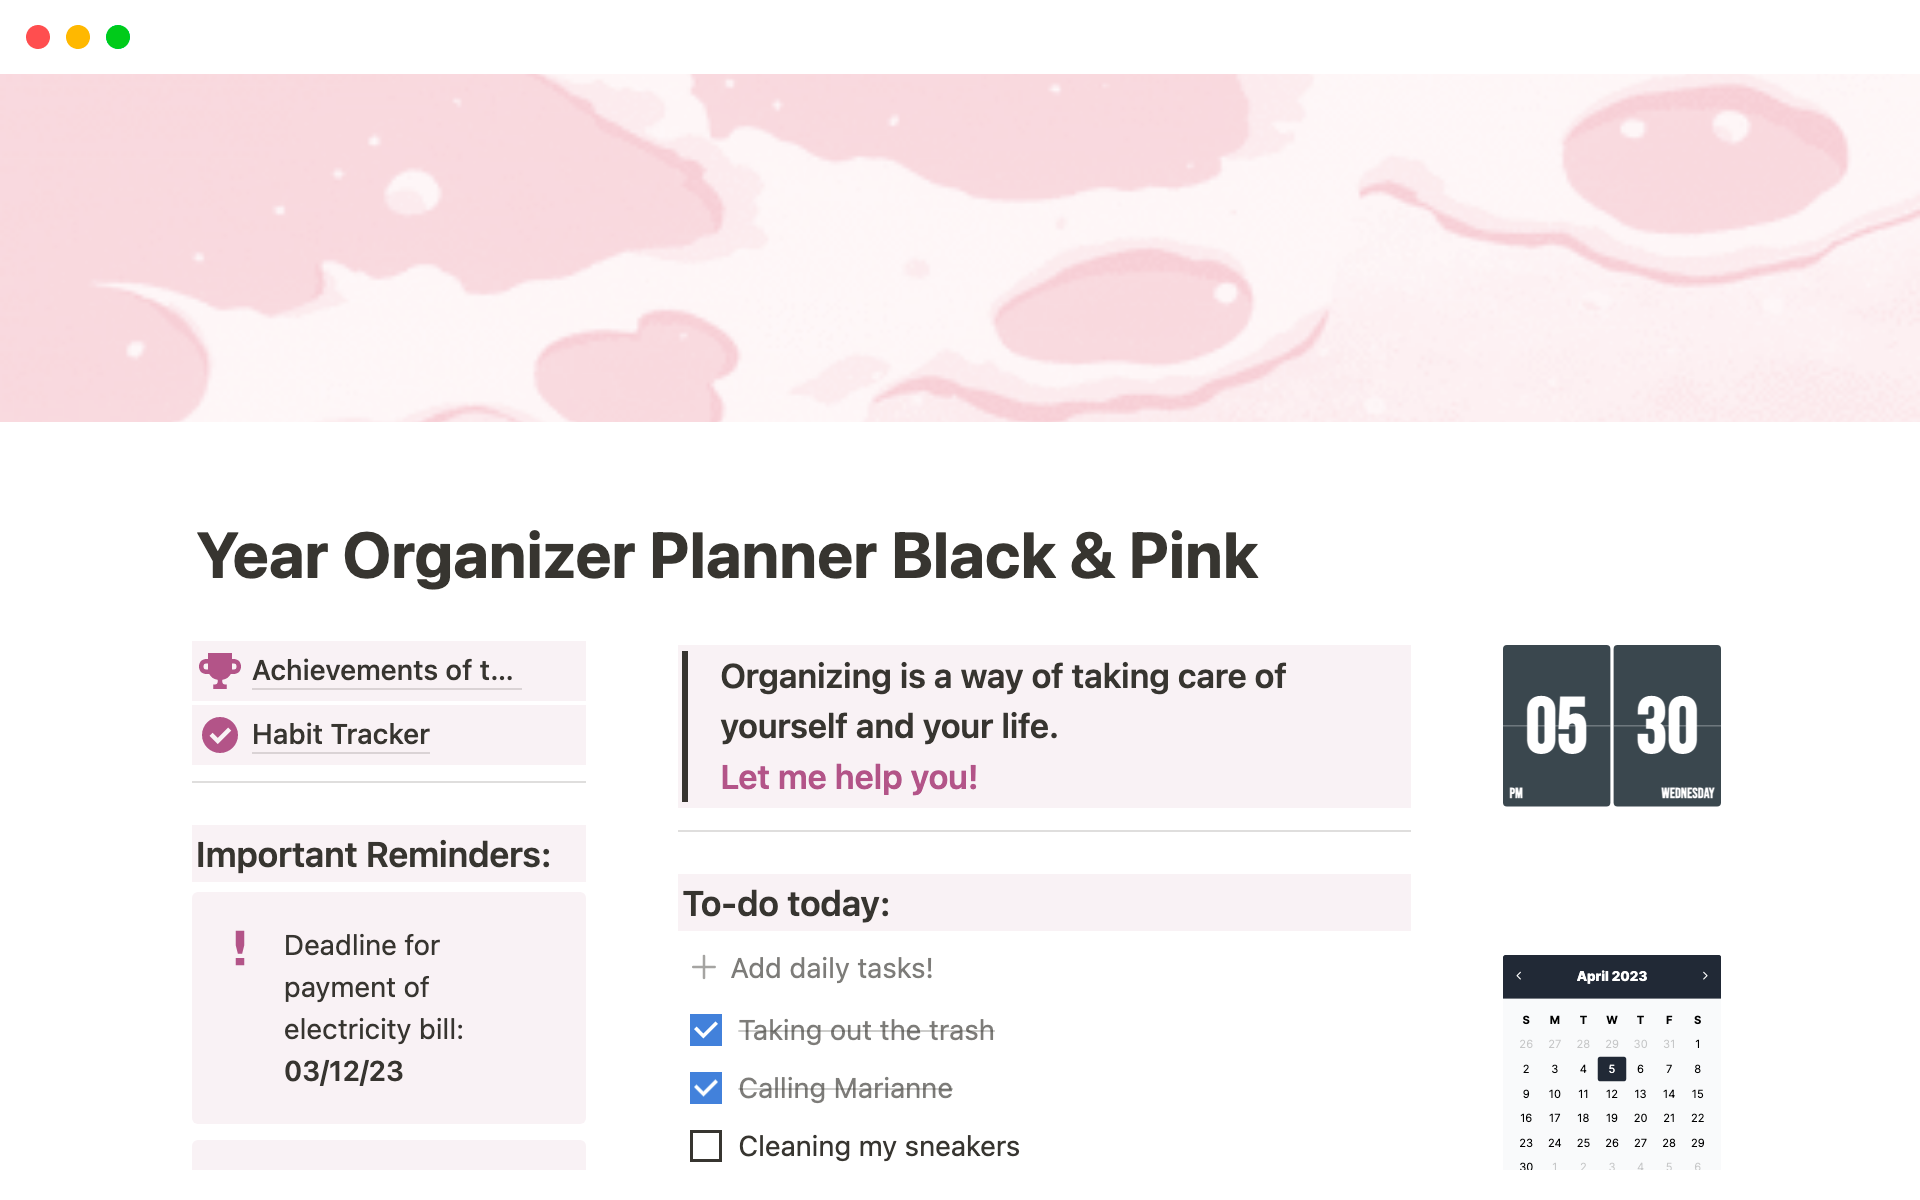 Uma prévia do modelo para Year Organizer Planner Black & Pink